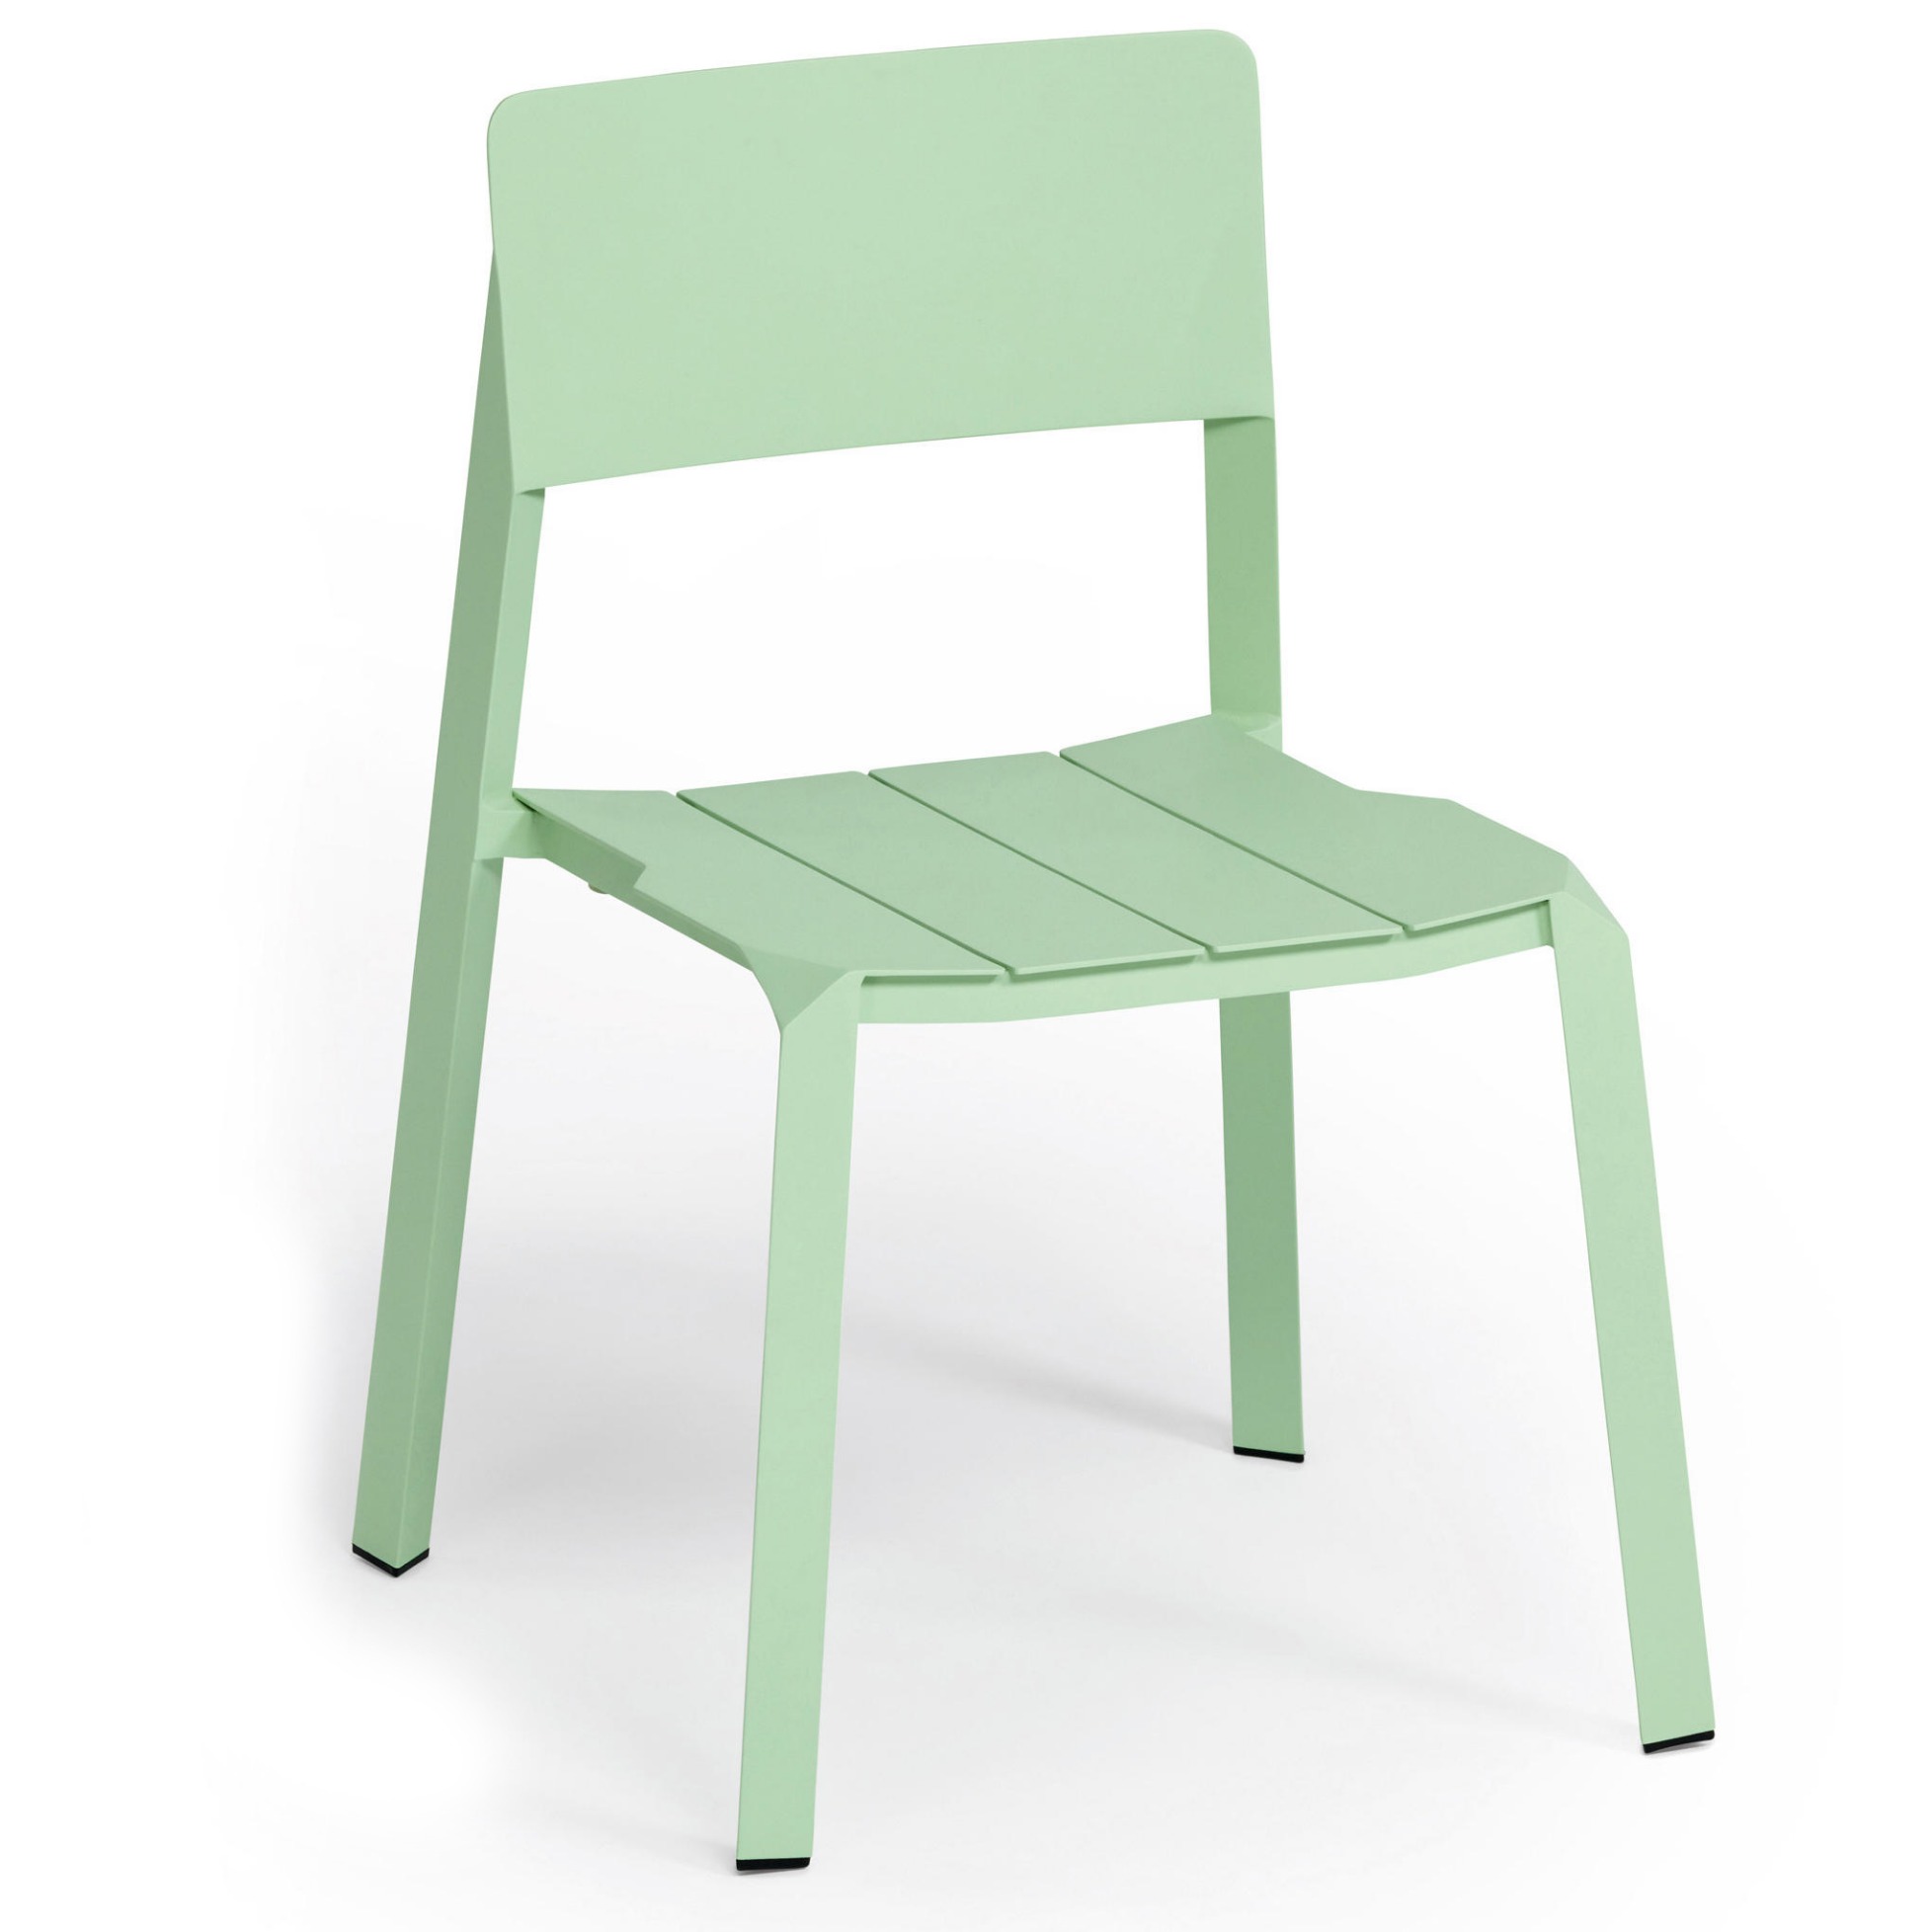 Flow Garden Chair By Weishaupl